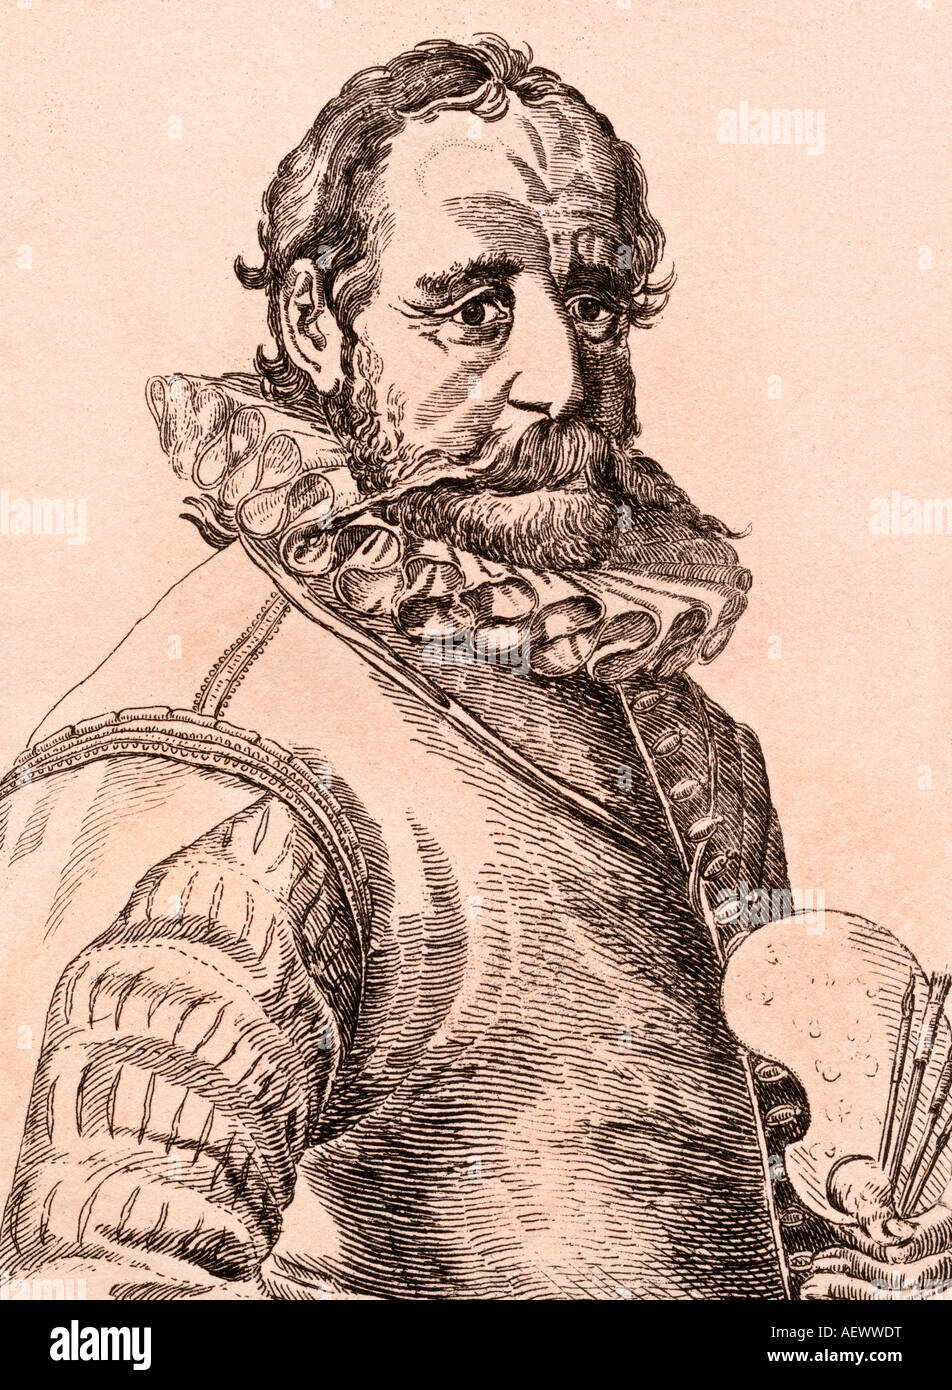 Hans Bol oder Jan Bol, 1534 - 1593. Flämischer Maler, Grafiker, Miniaturmaler und Zeichner Stockfoto